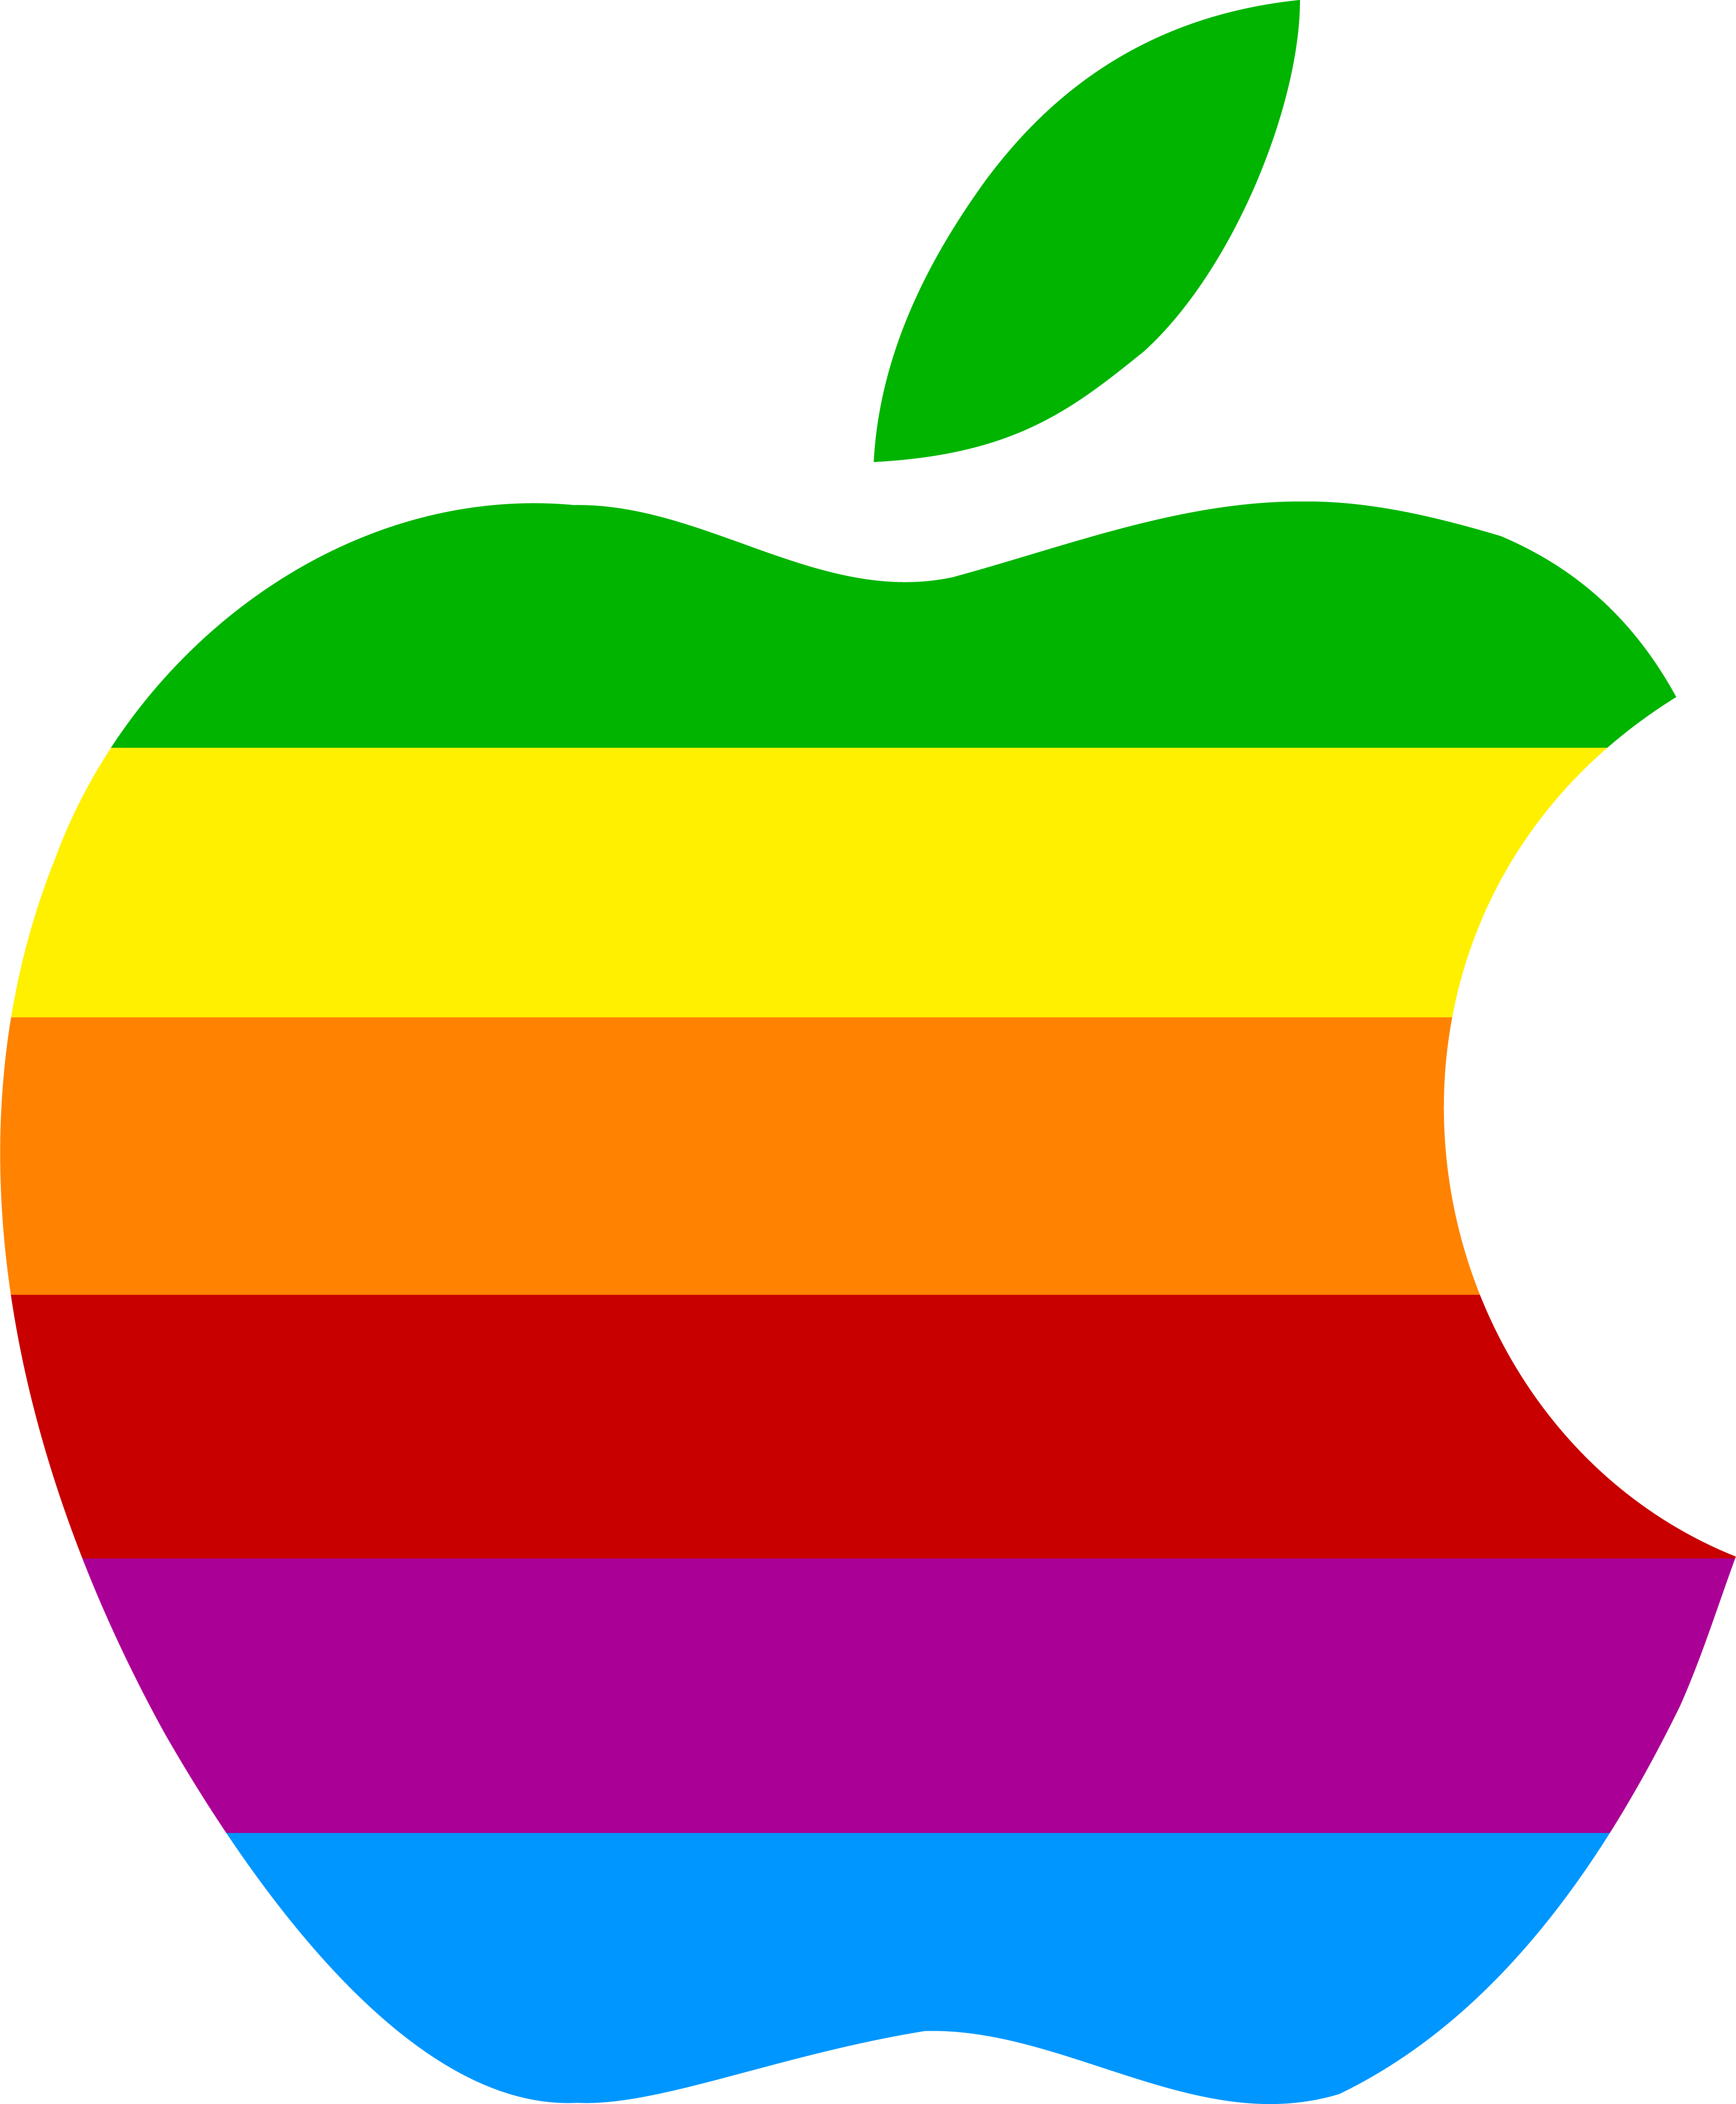 Logo Apple Business apple logo png download 4125*5000